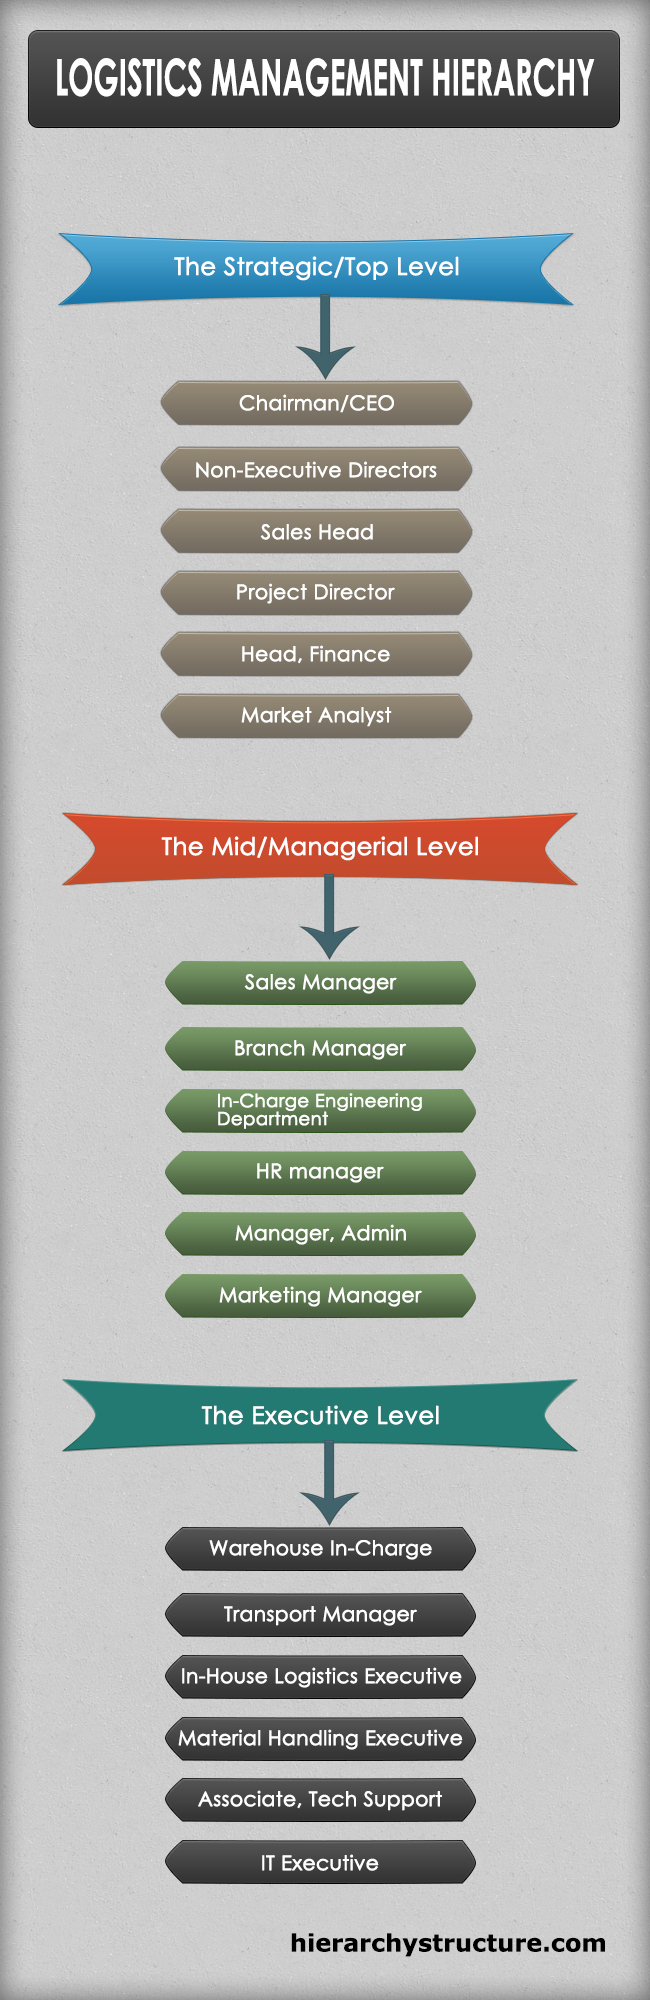 Logistics Management Hierarchy